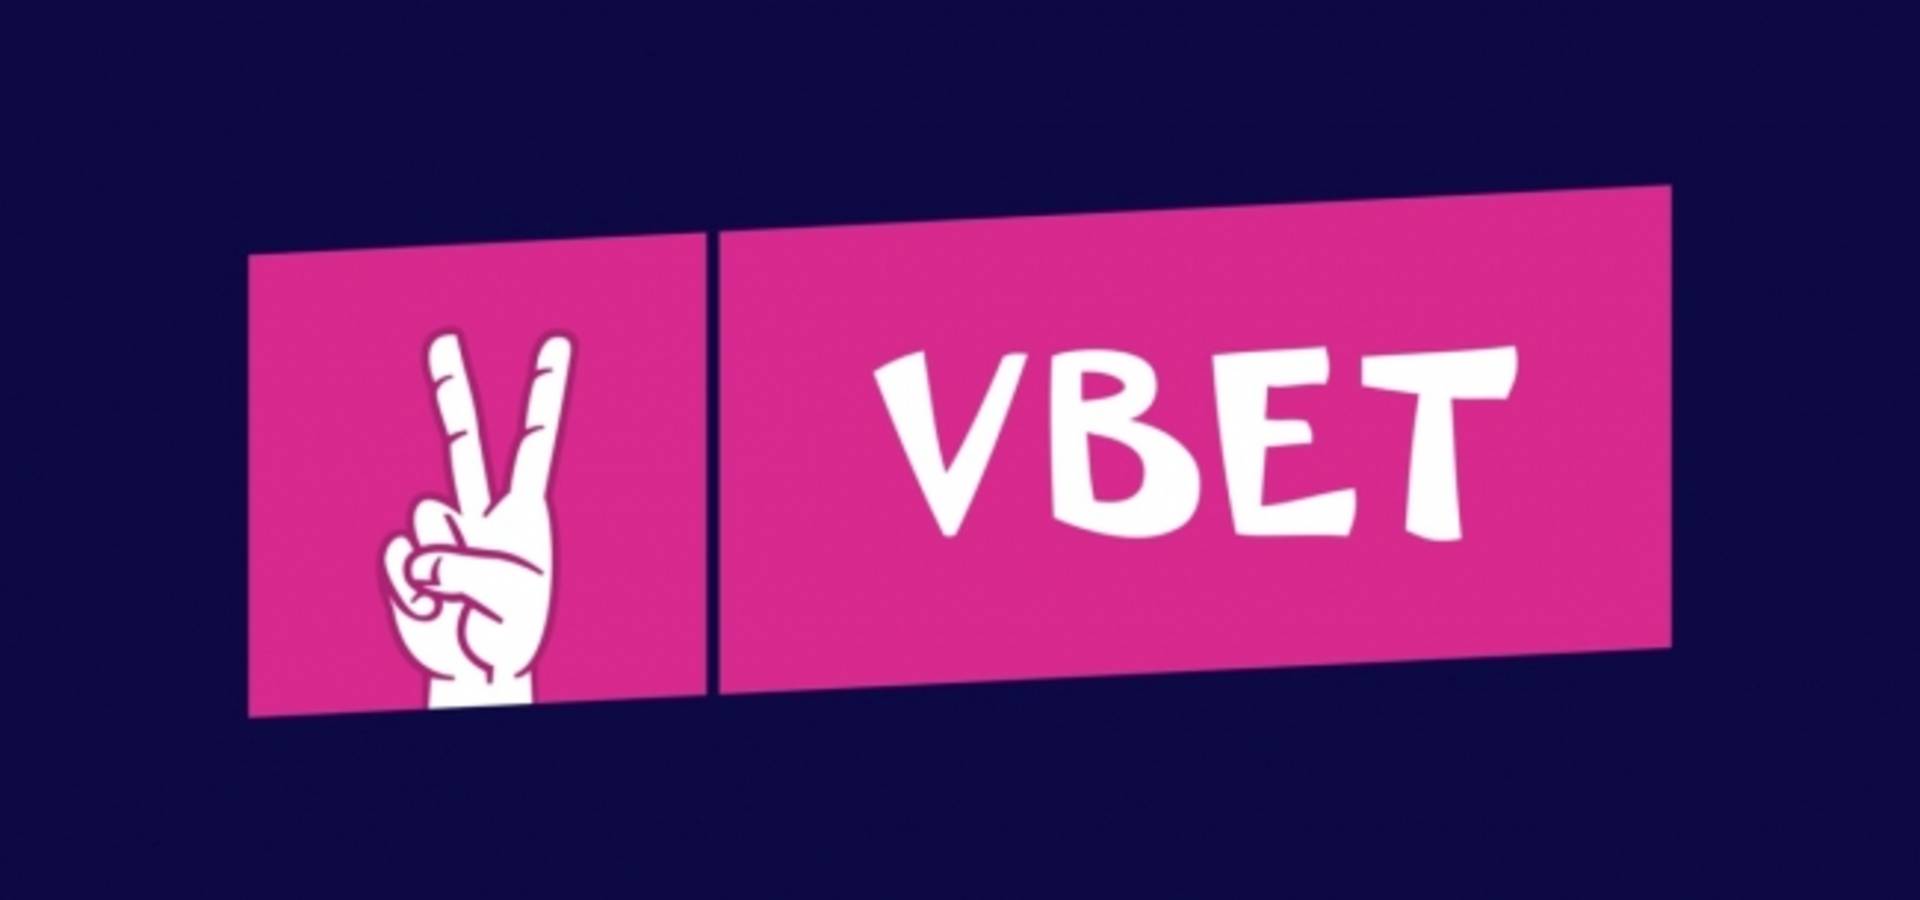 Vbet Casino - Ліцензований та безпечний азартний клуб з багатьма перевагами